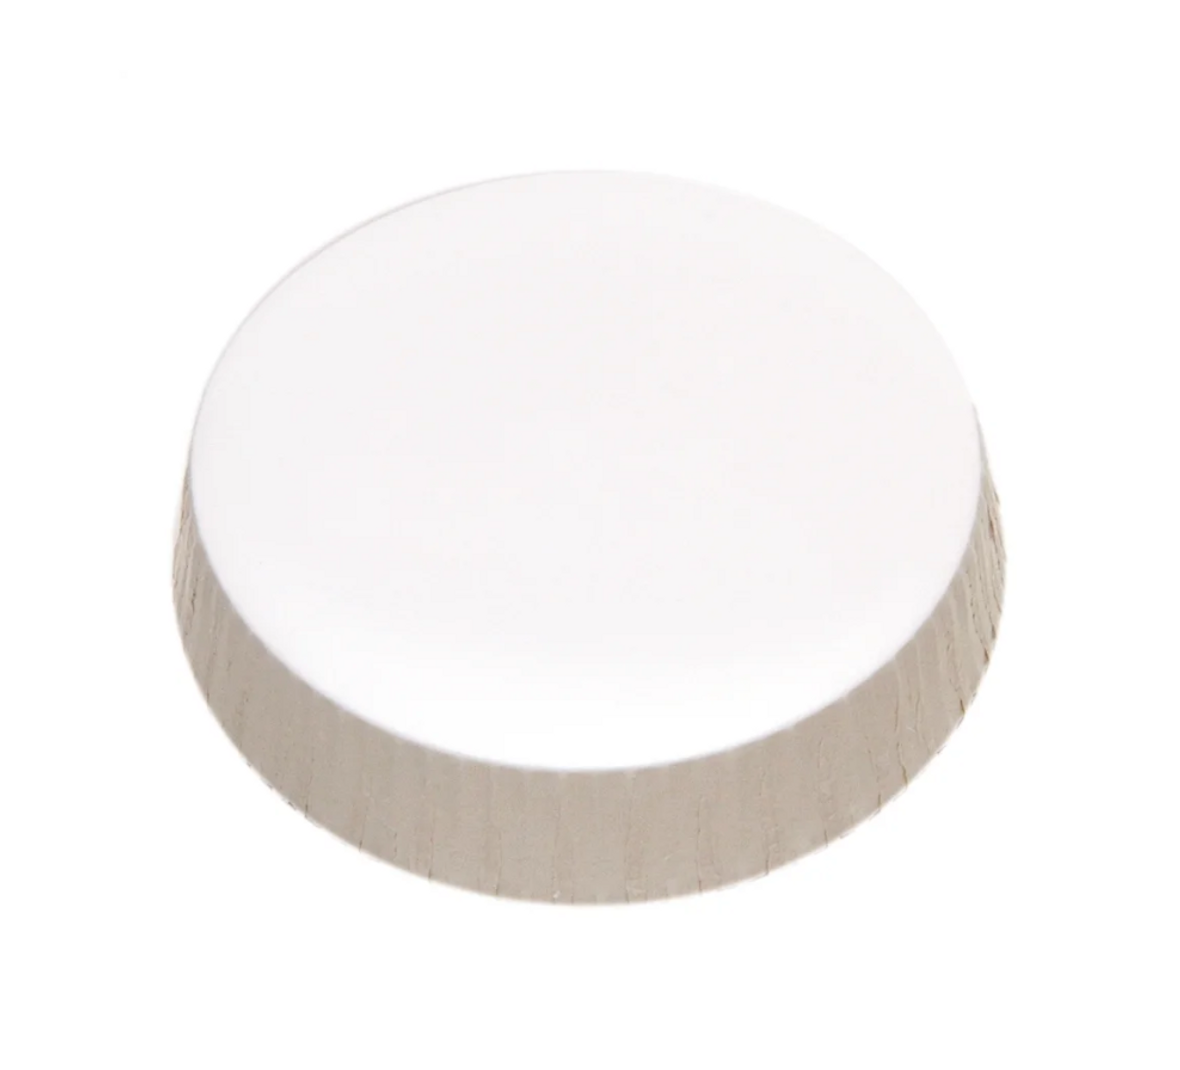 Sonoco Unprinted Stancaps Glass Cover, Paper, 45MM, 2500 Per Case